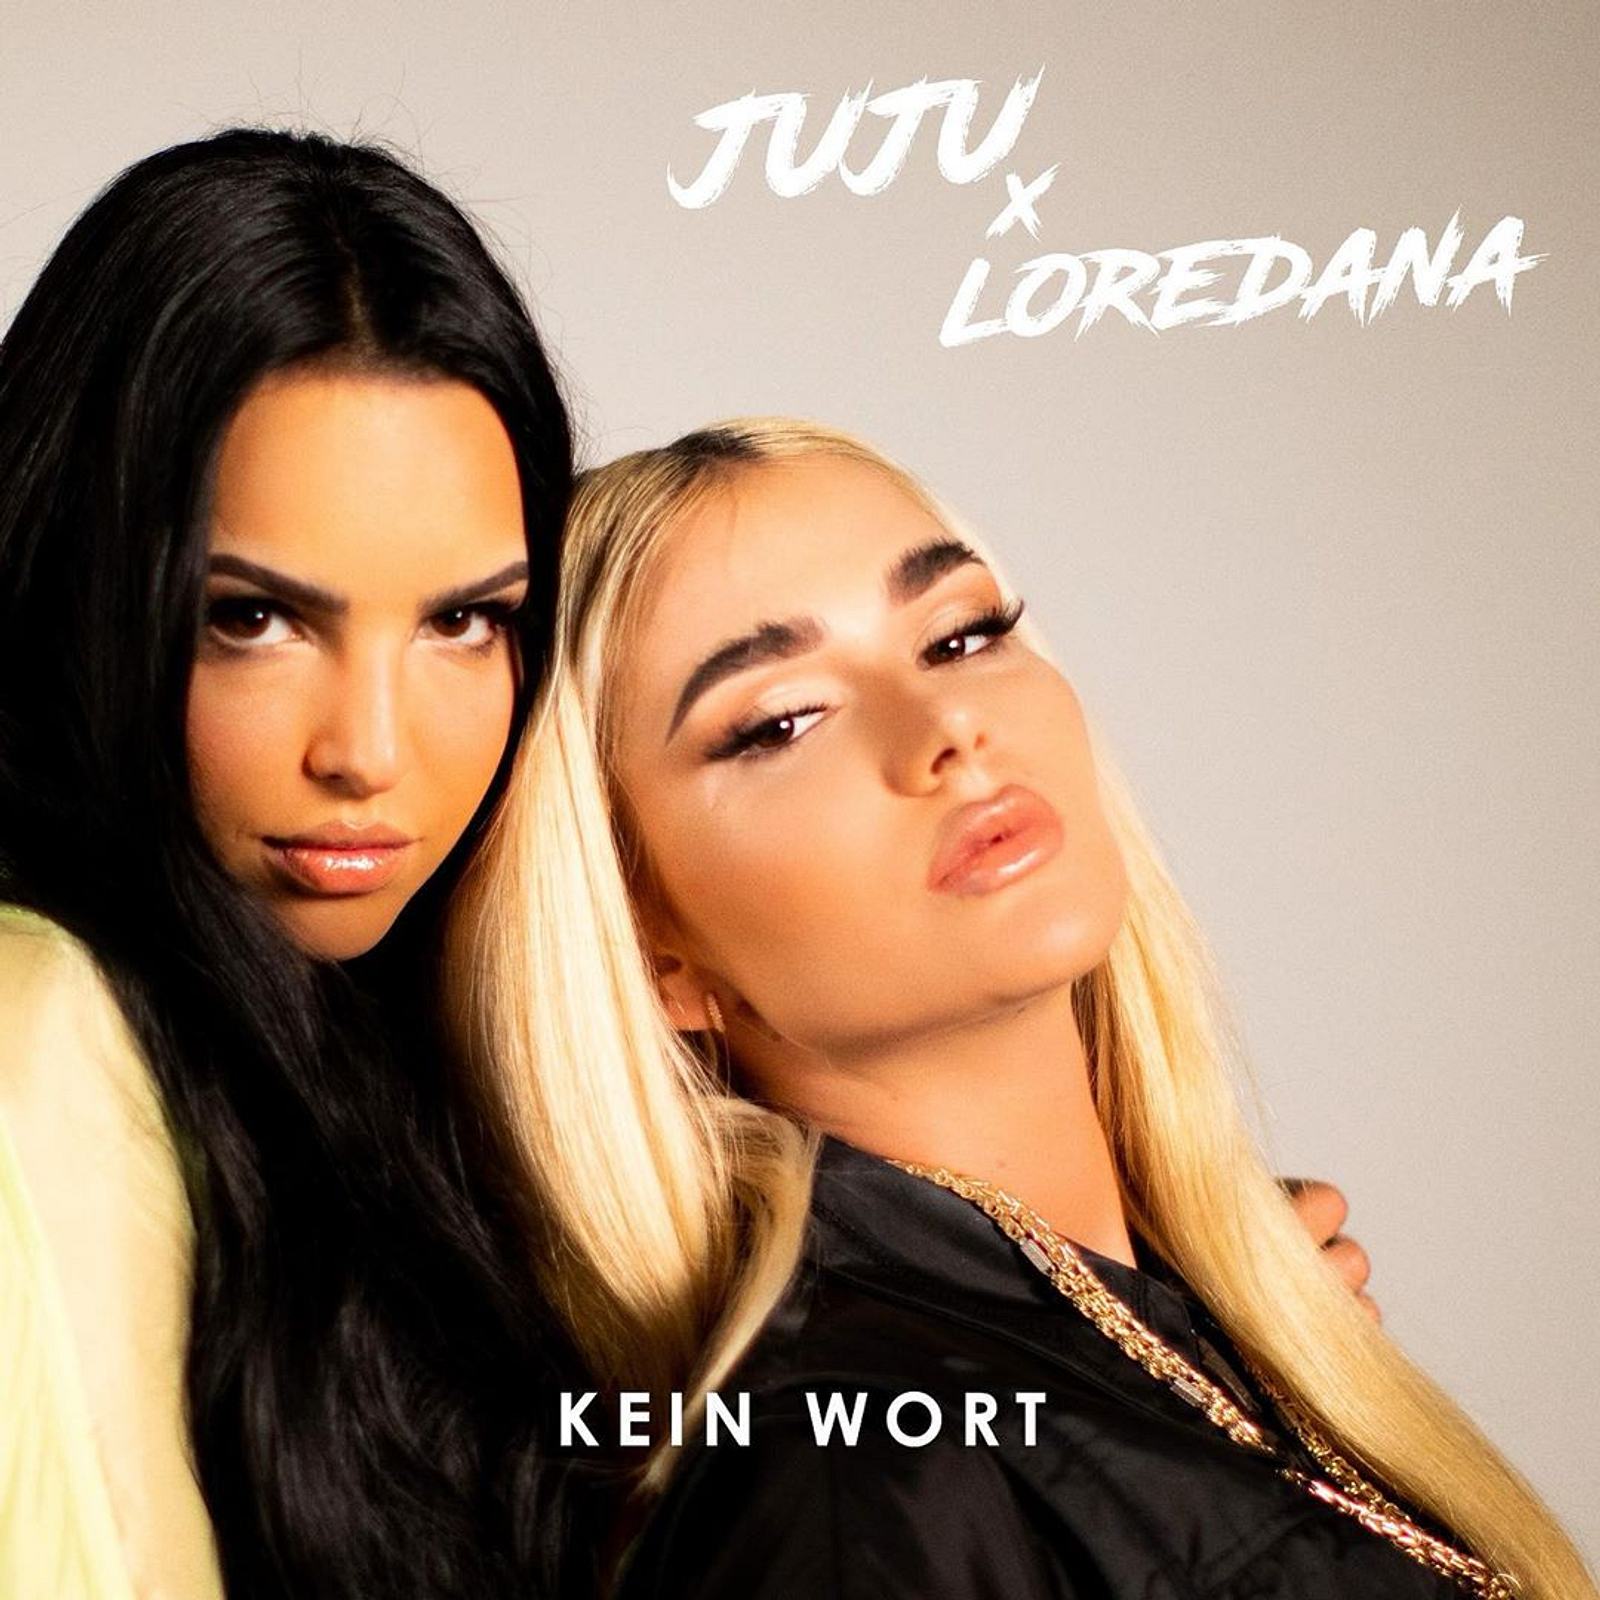 Juju And Loredana Alle Infos Zum Gemeinsamen Song Bravo